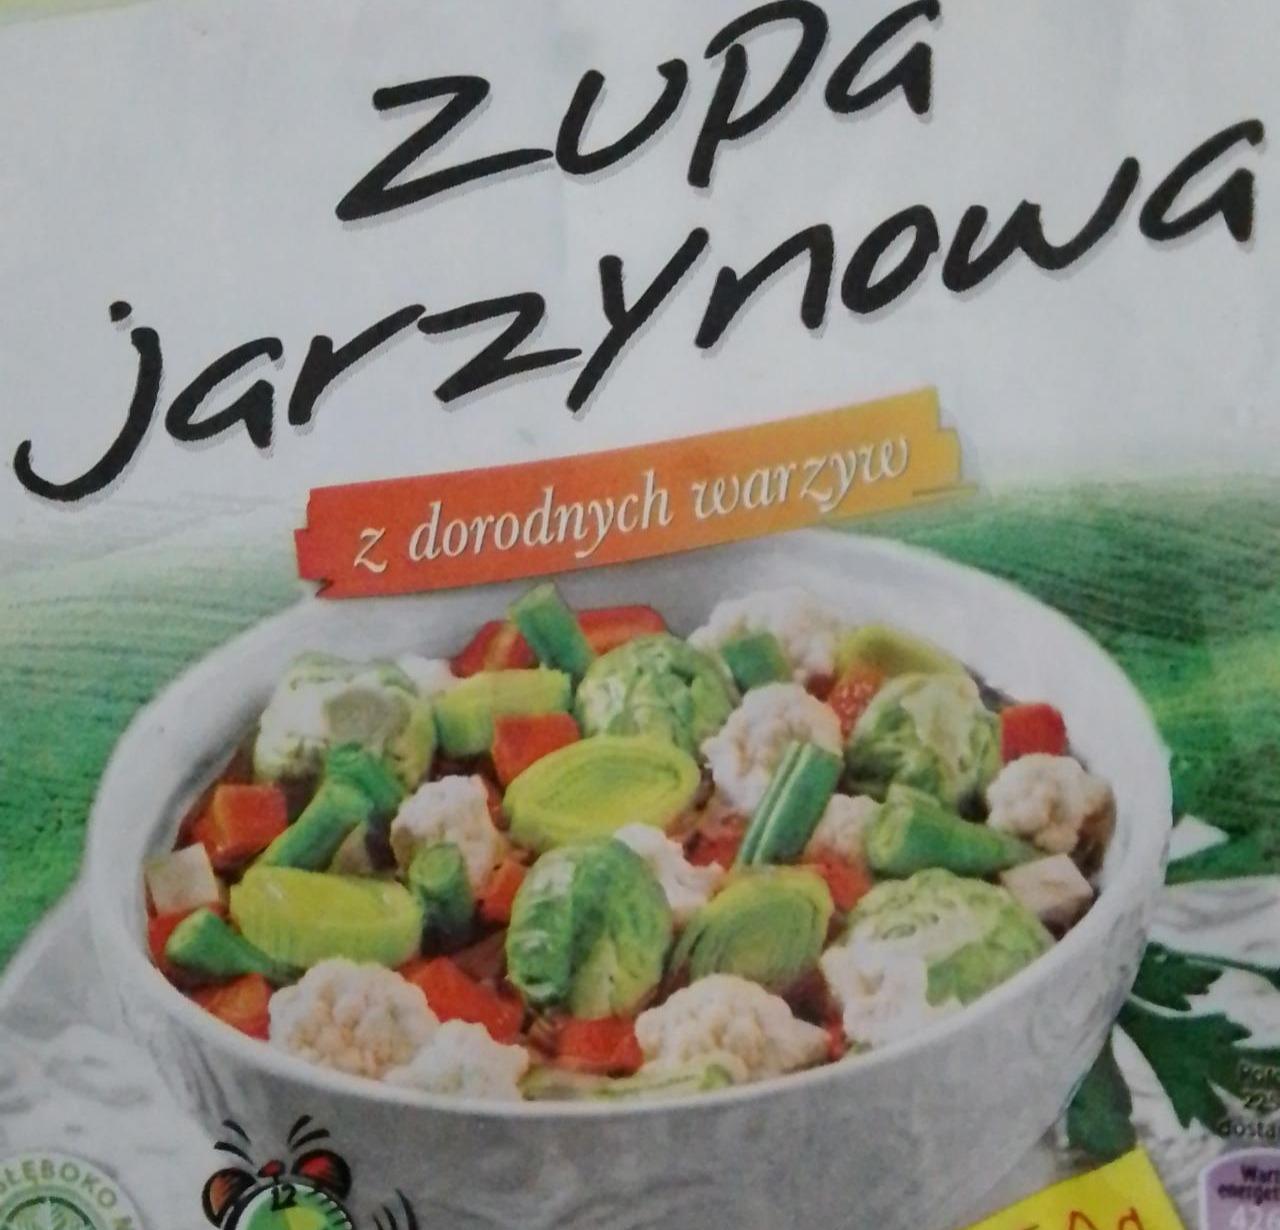 Фото - Суп із заморожених овочів MW Społem